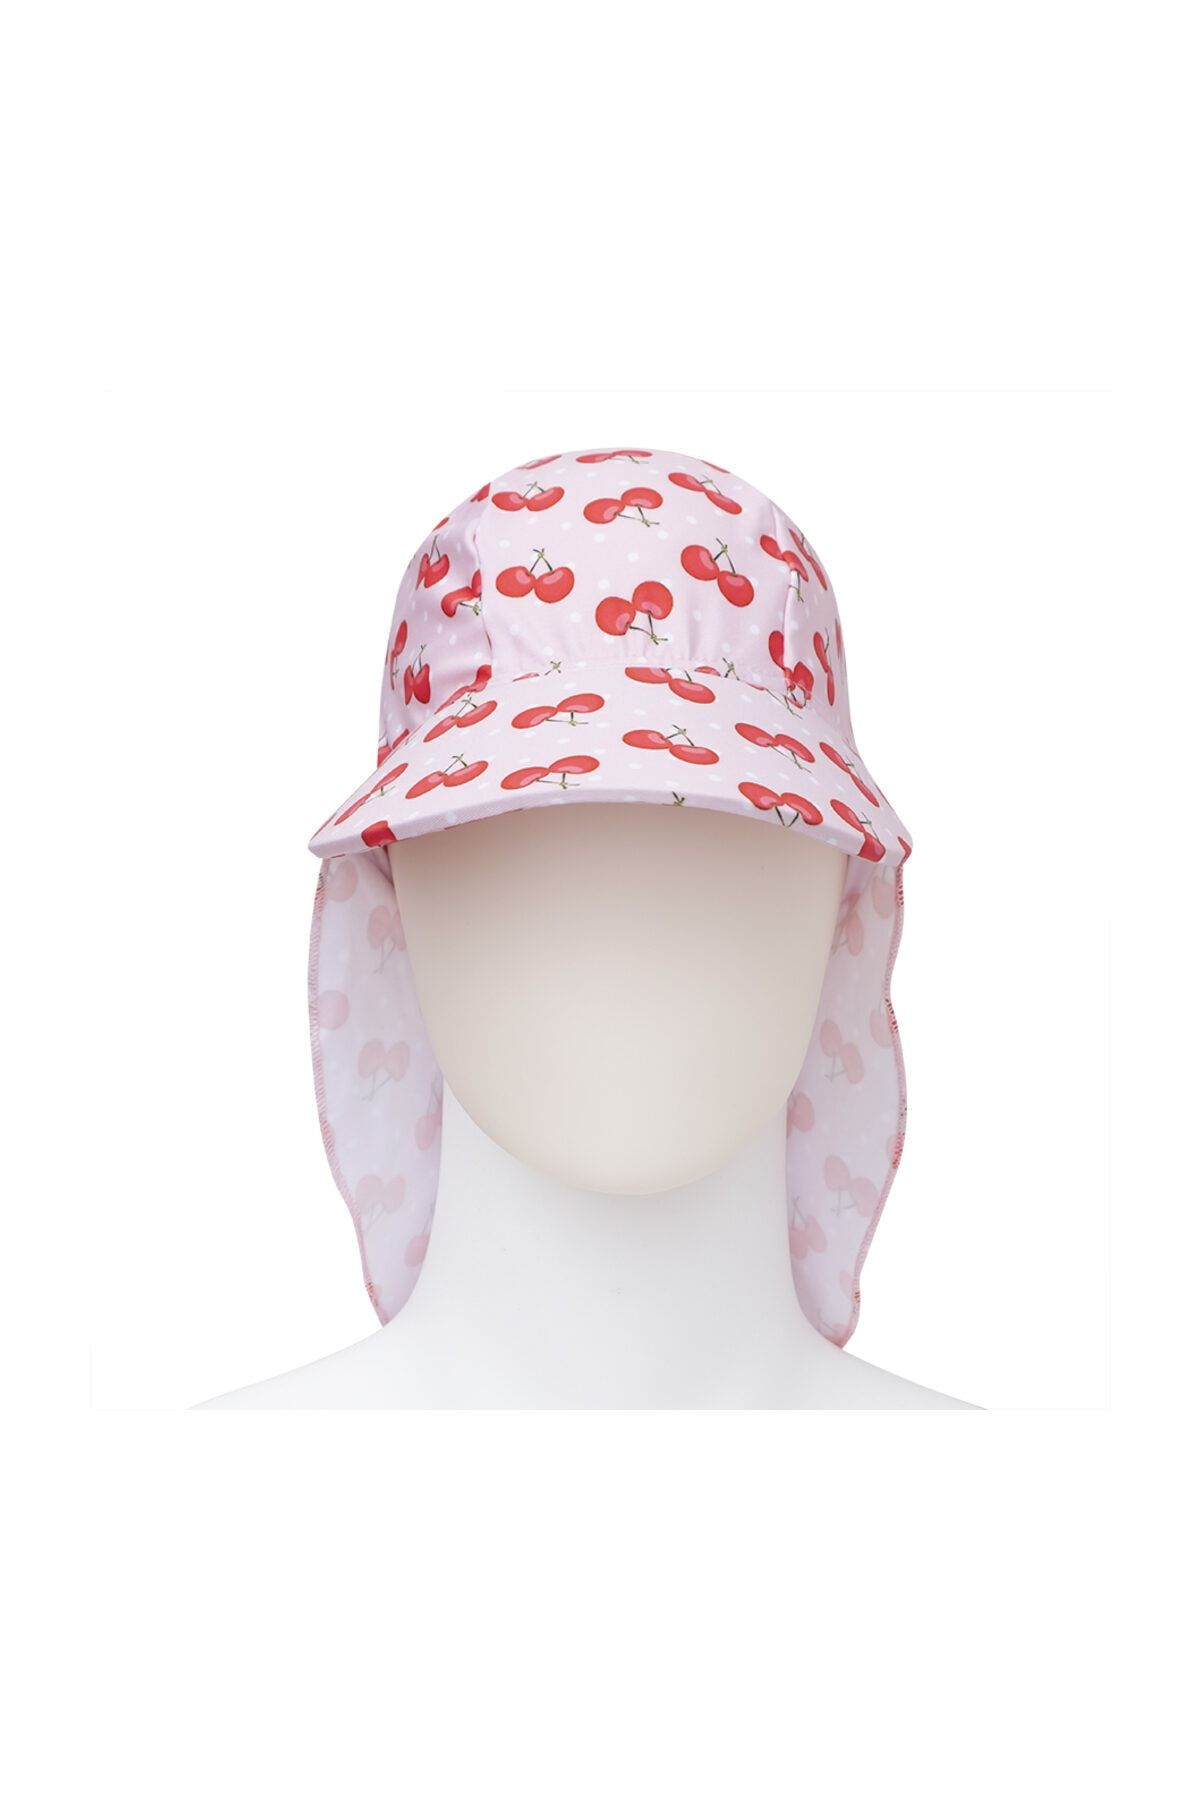 SLIPSTOP Cherry Güneş Korumalı Kız Çocuk Şapka Spf 50